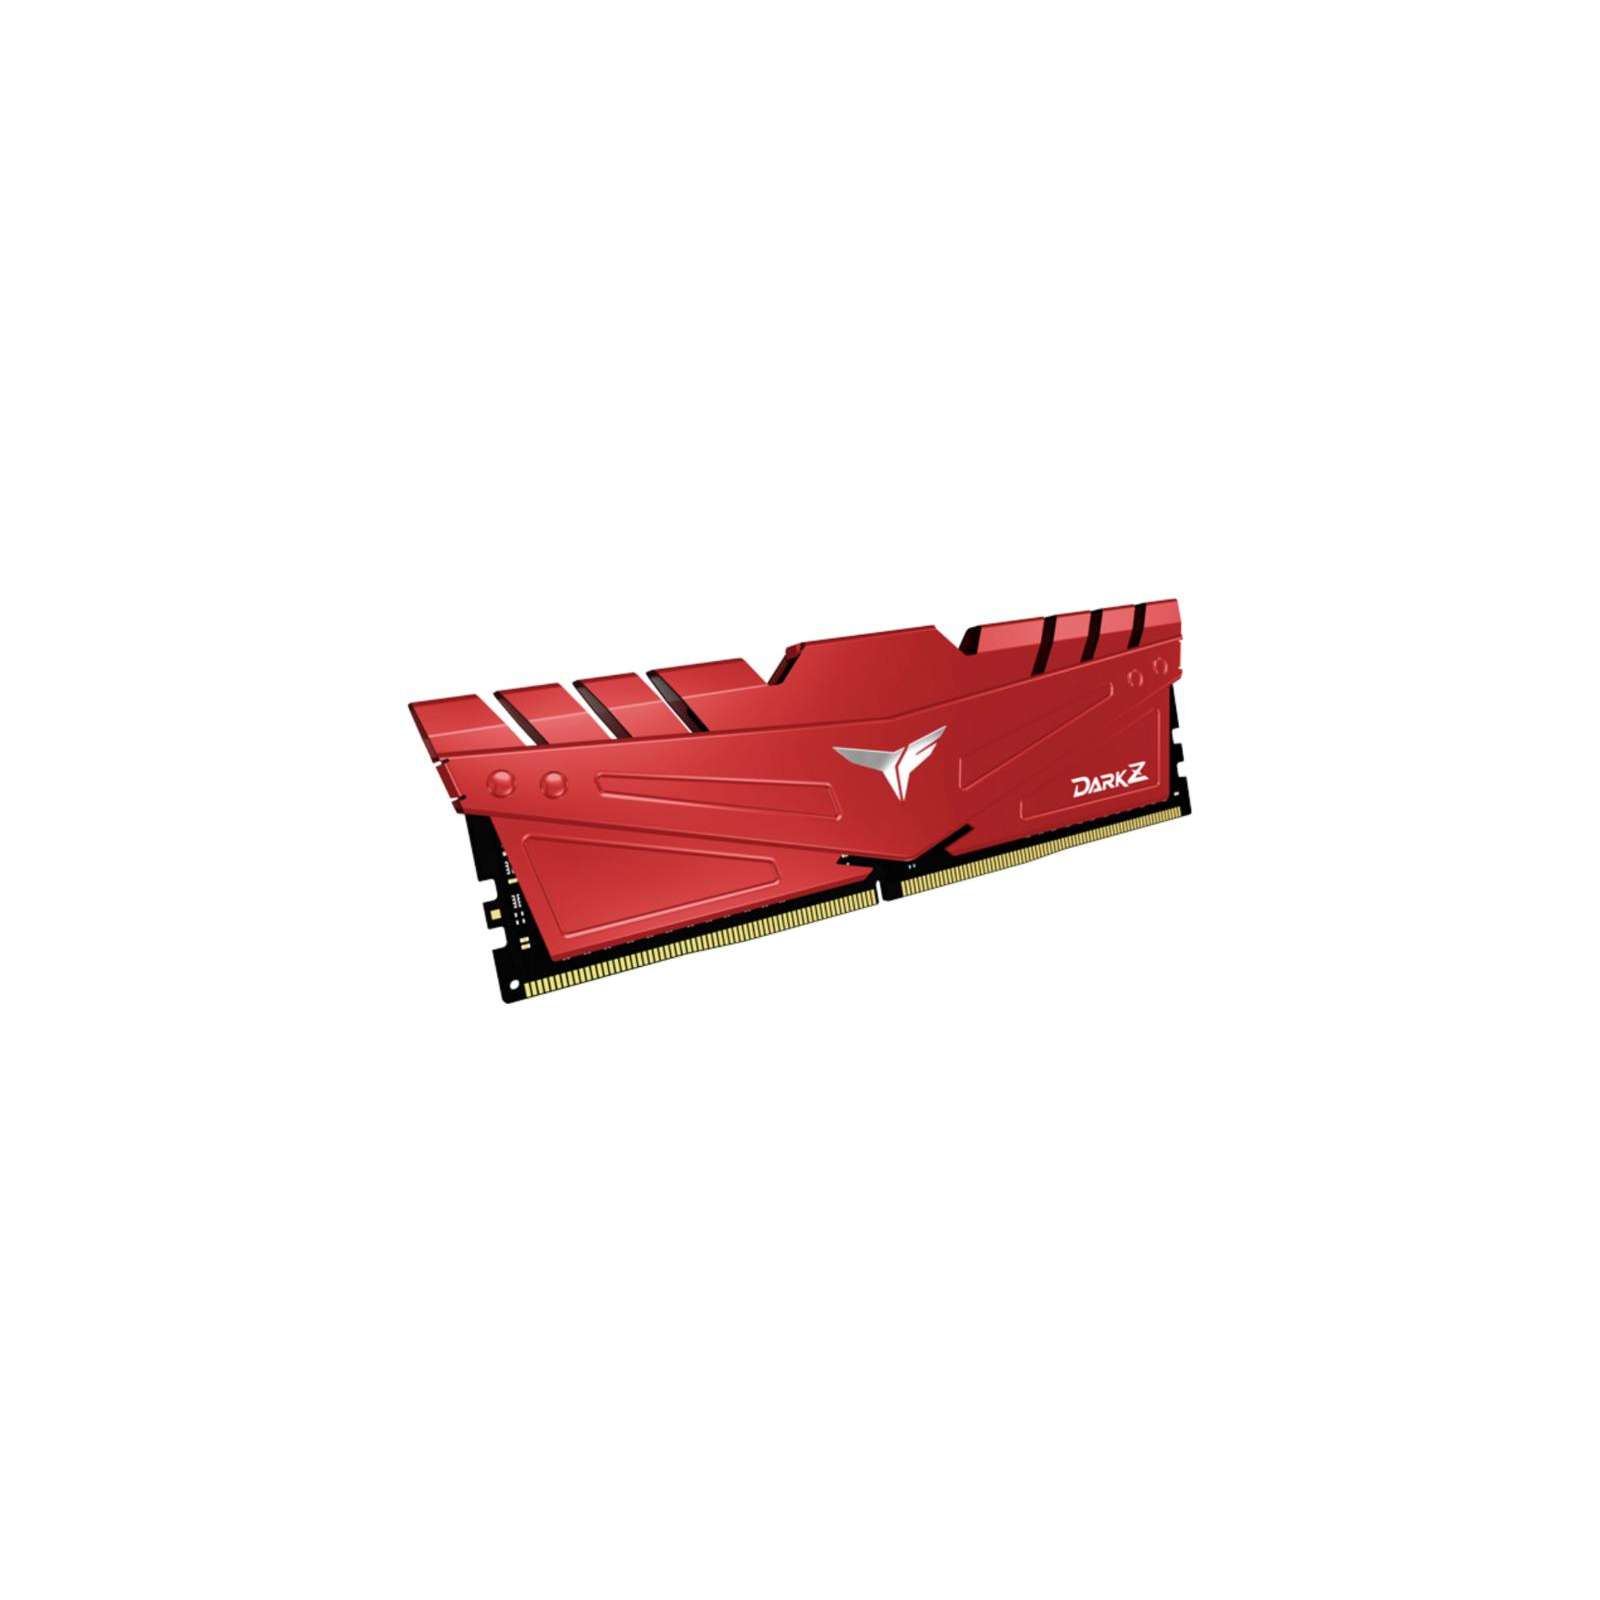 Модуль памяти для компьютера DDR4 16GB (2x8GB) 3000 MHz T-Force Dark Z Red Team (TDZRD416G3000HC16CDC01) изображение 2